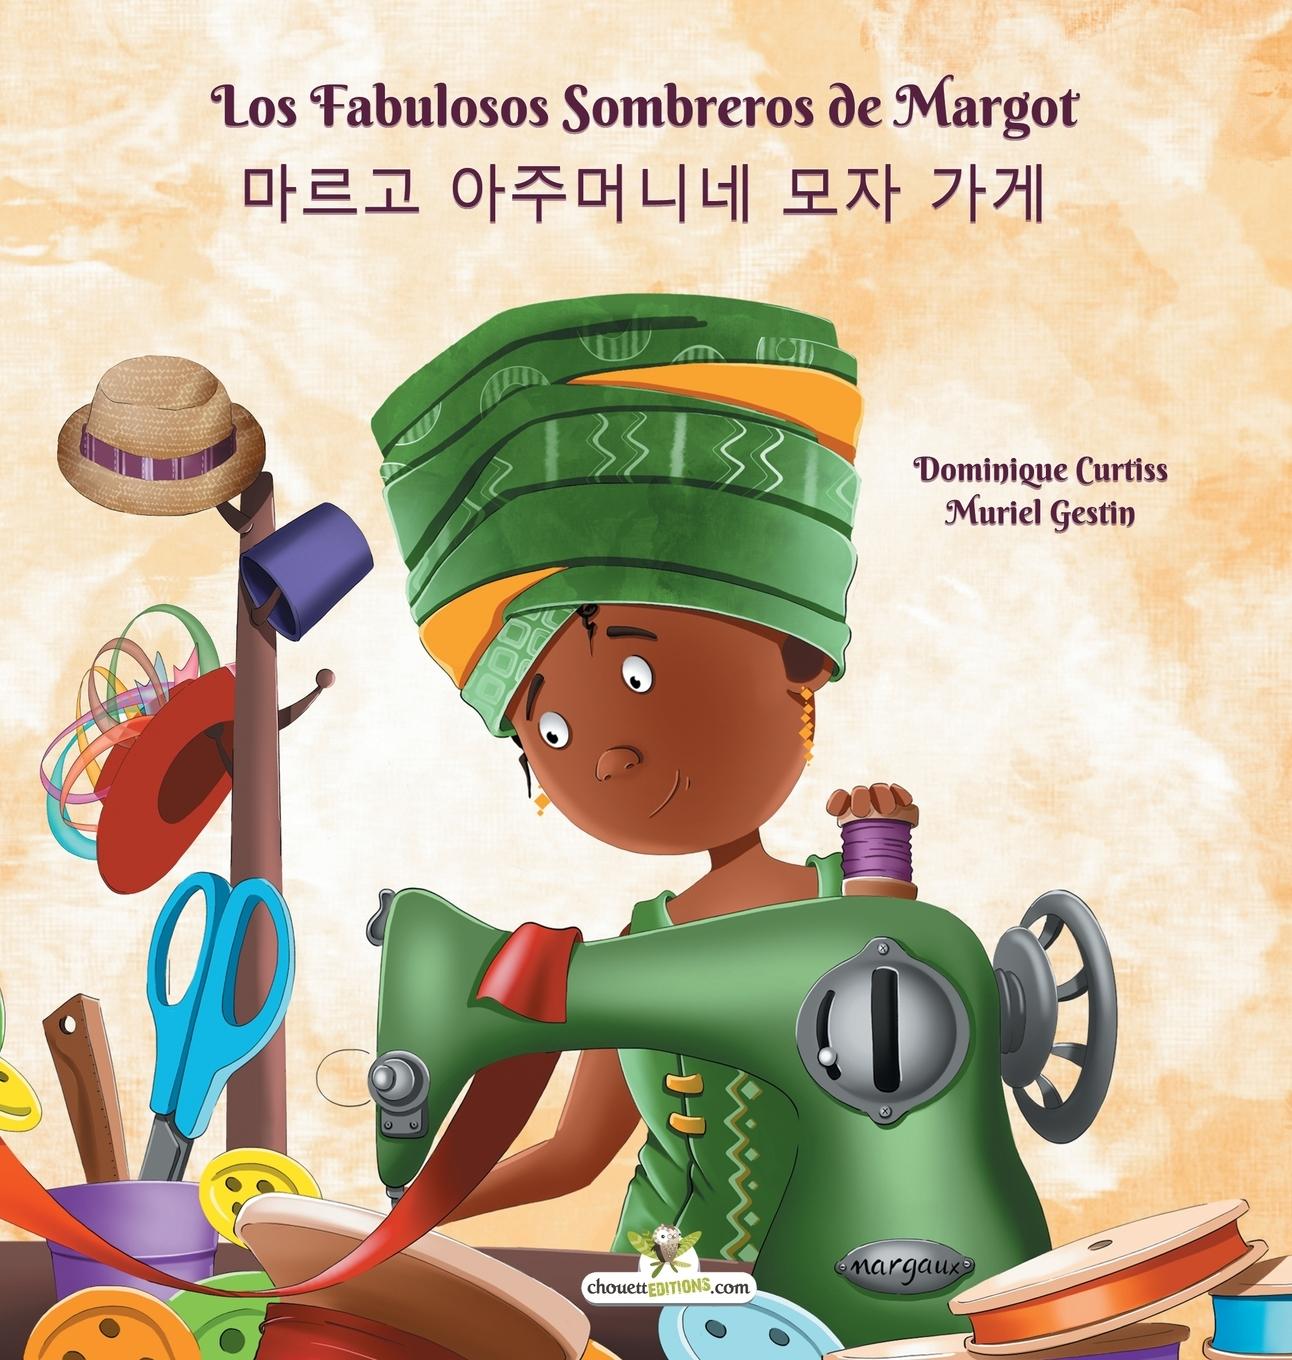 Kniha Los Fabulosos Sombreros de Margot - &#47560;&#47476;&#44256; &#50500;&#51452;&#47672;&#45768;&#45348; &#47784;&#51088; &#44032;&#44172; Muriel Gestin